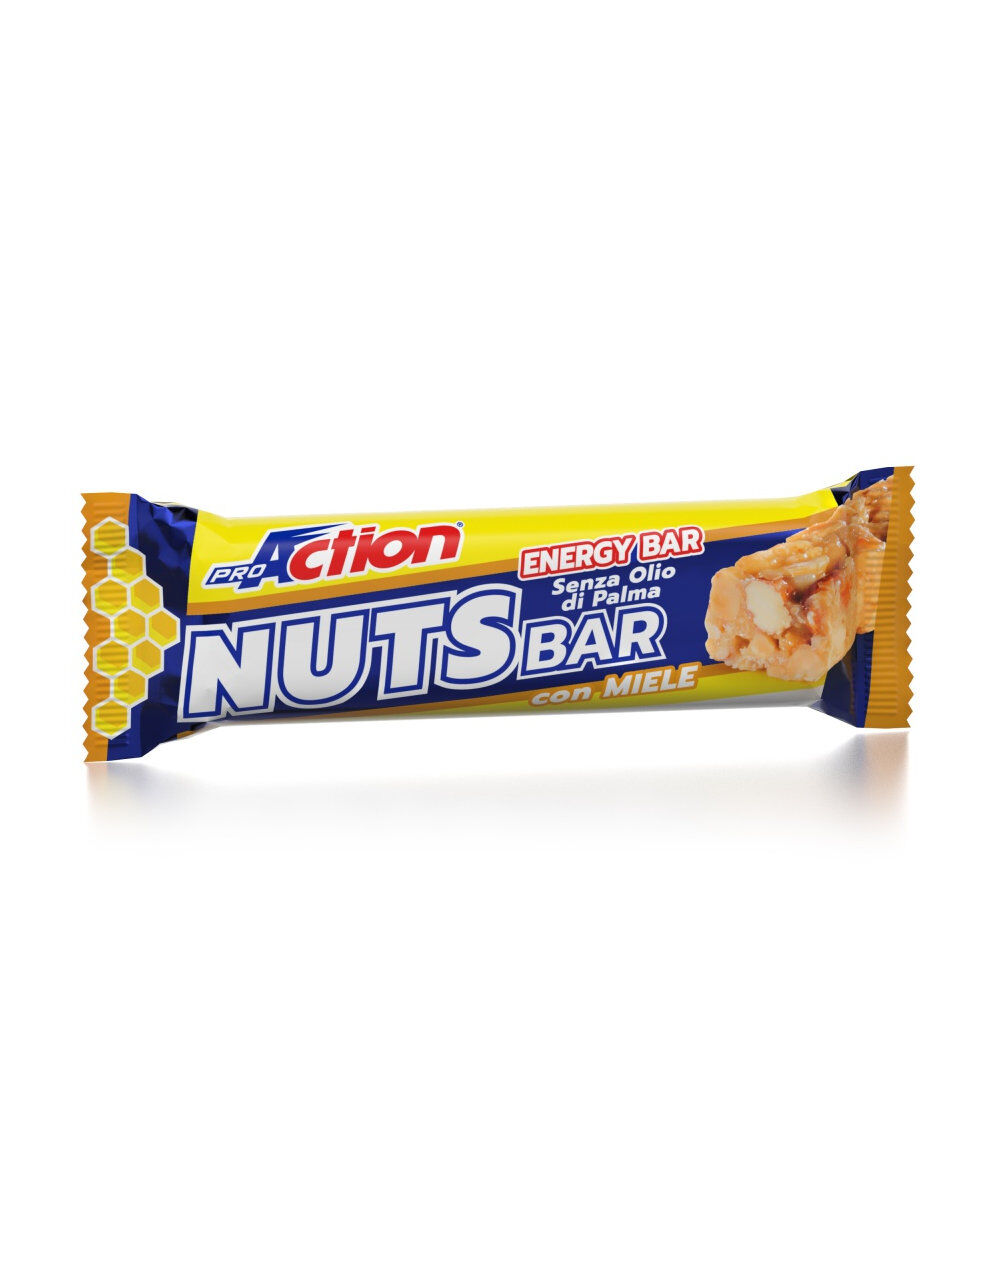 PROACTION Nuts Bar 1 Barretta Da 30 Grammi Miele